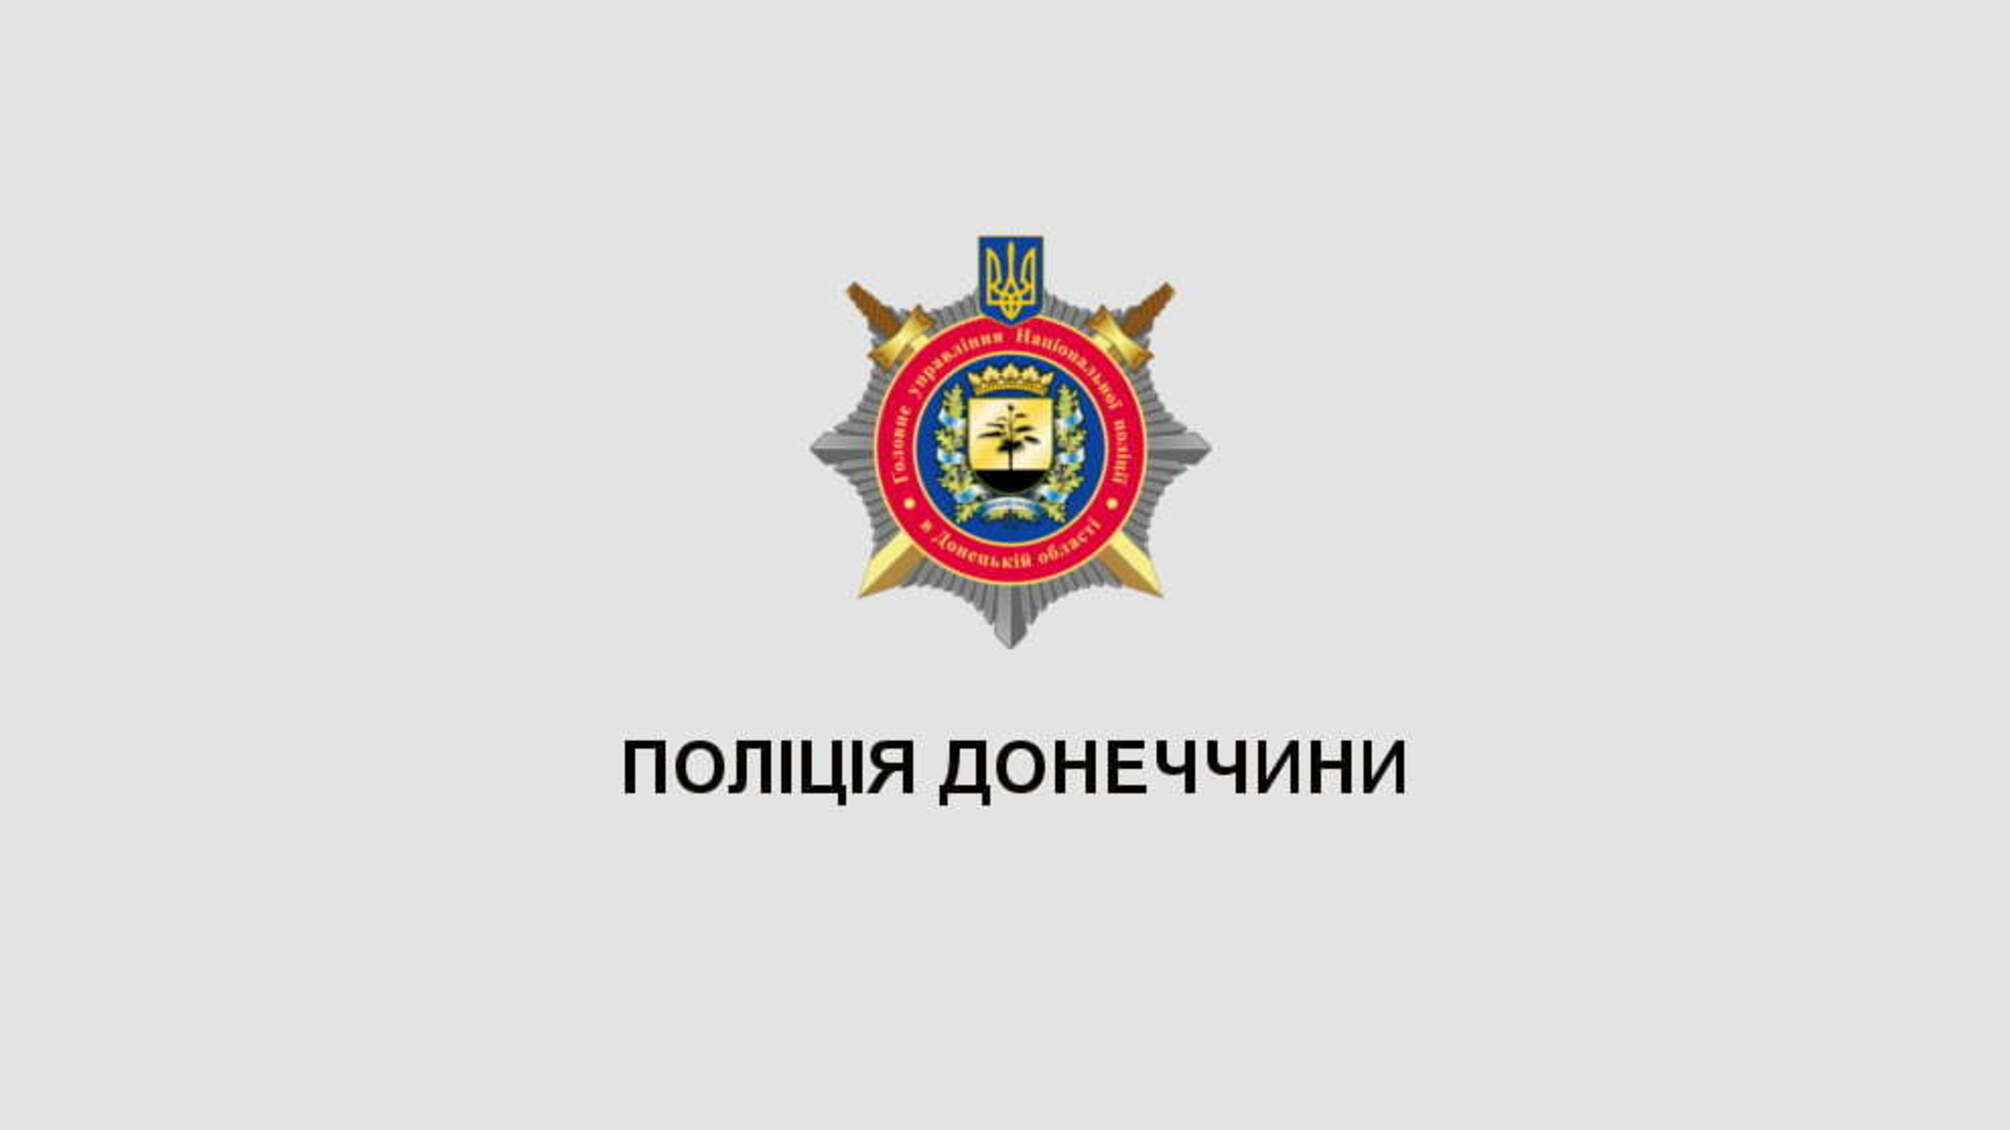 Поліцейські знищили в Костянтинівському районі 750 тисяч кущів конопель (ВІДЕО)